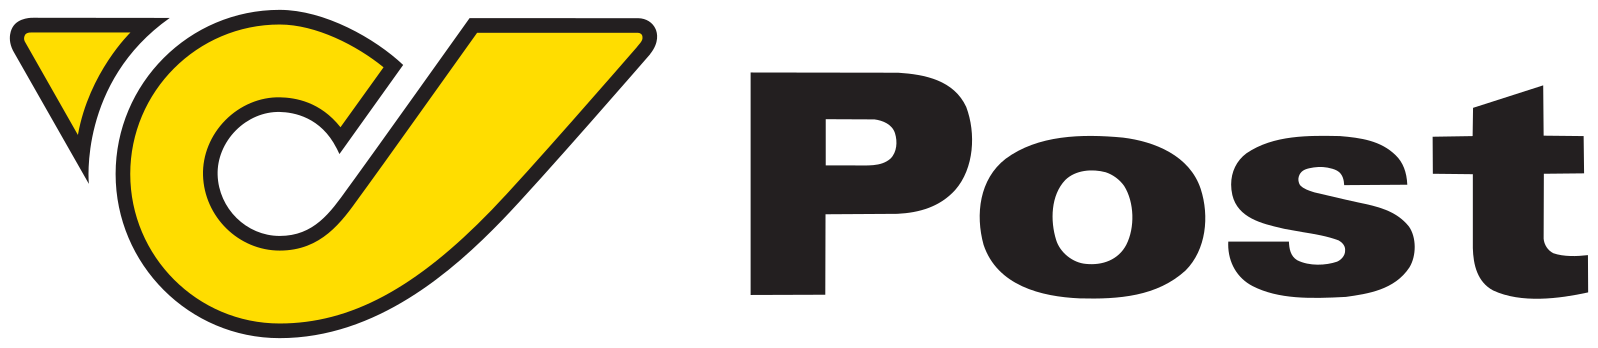 1598px-Österreichische_Post_logo.png